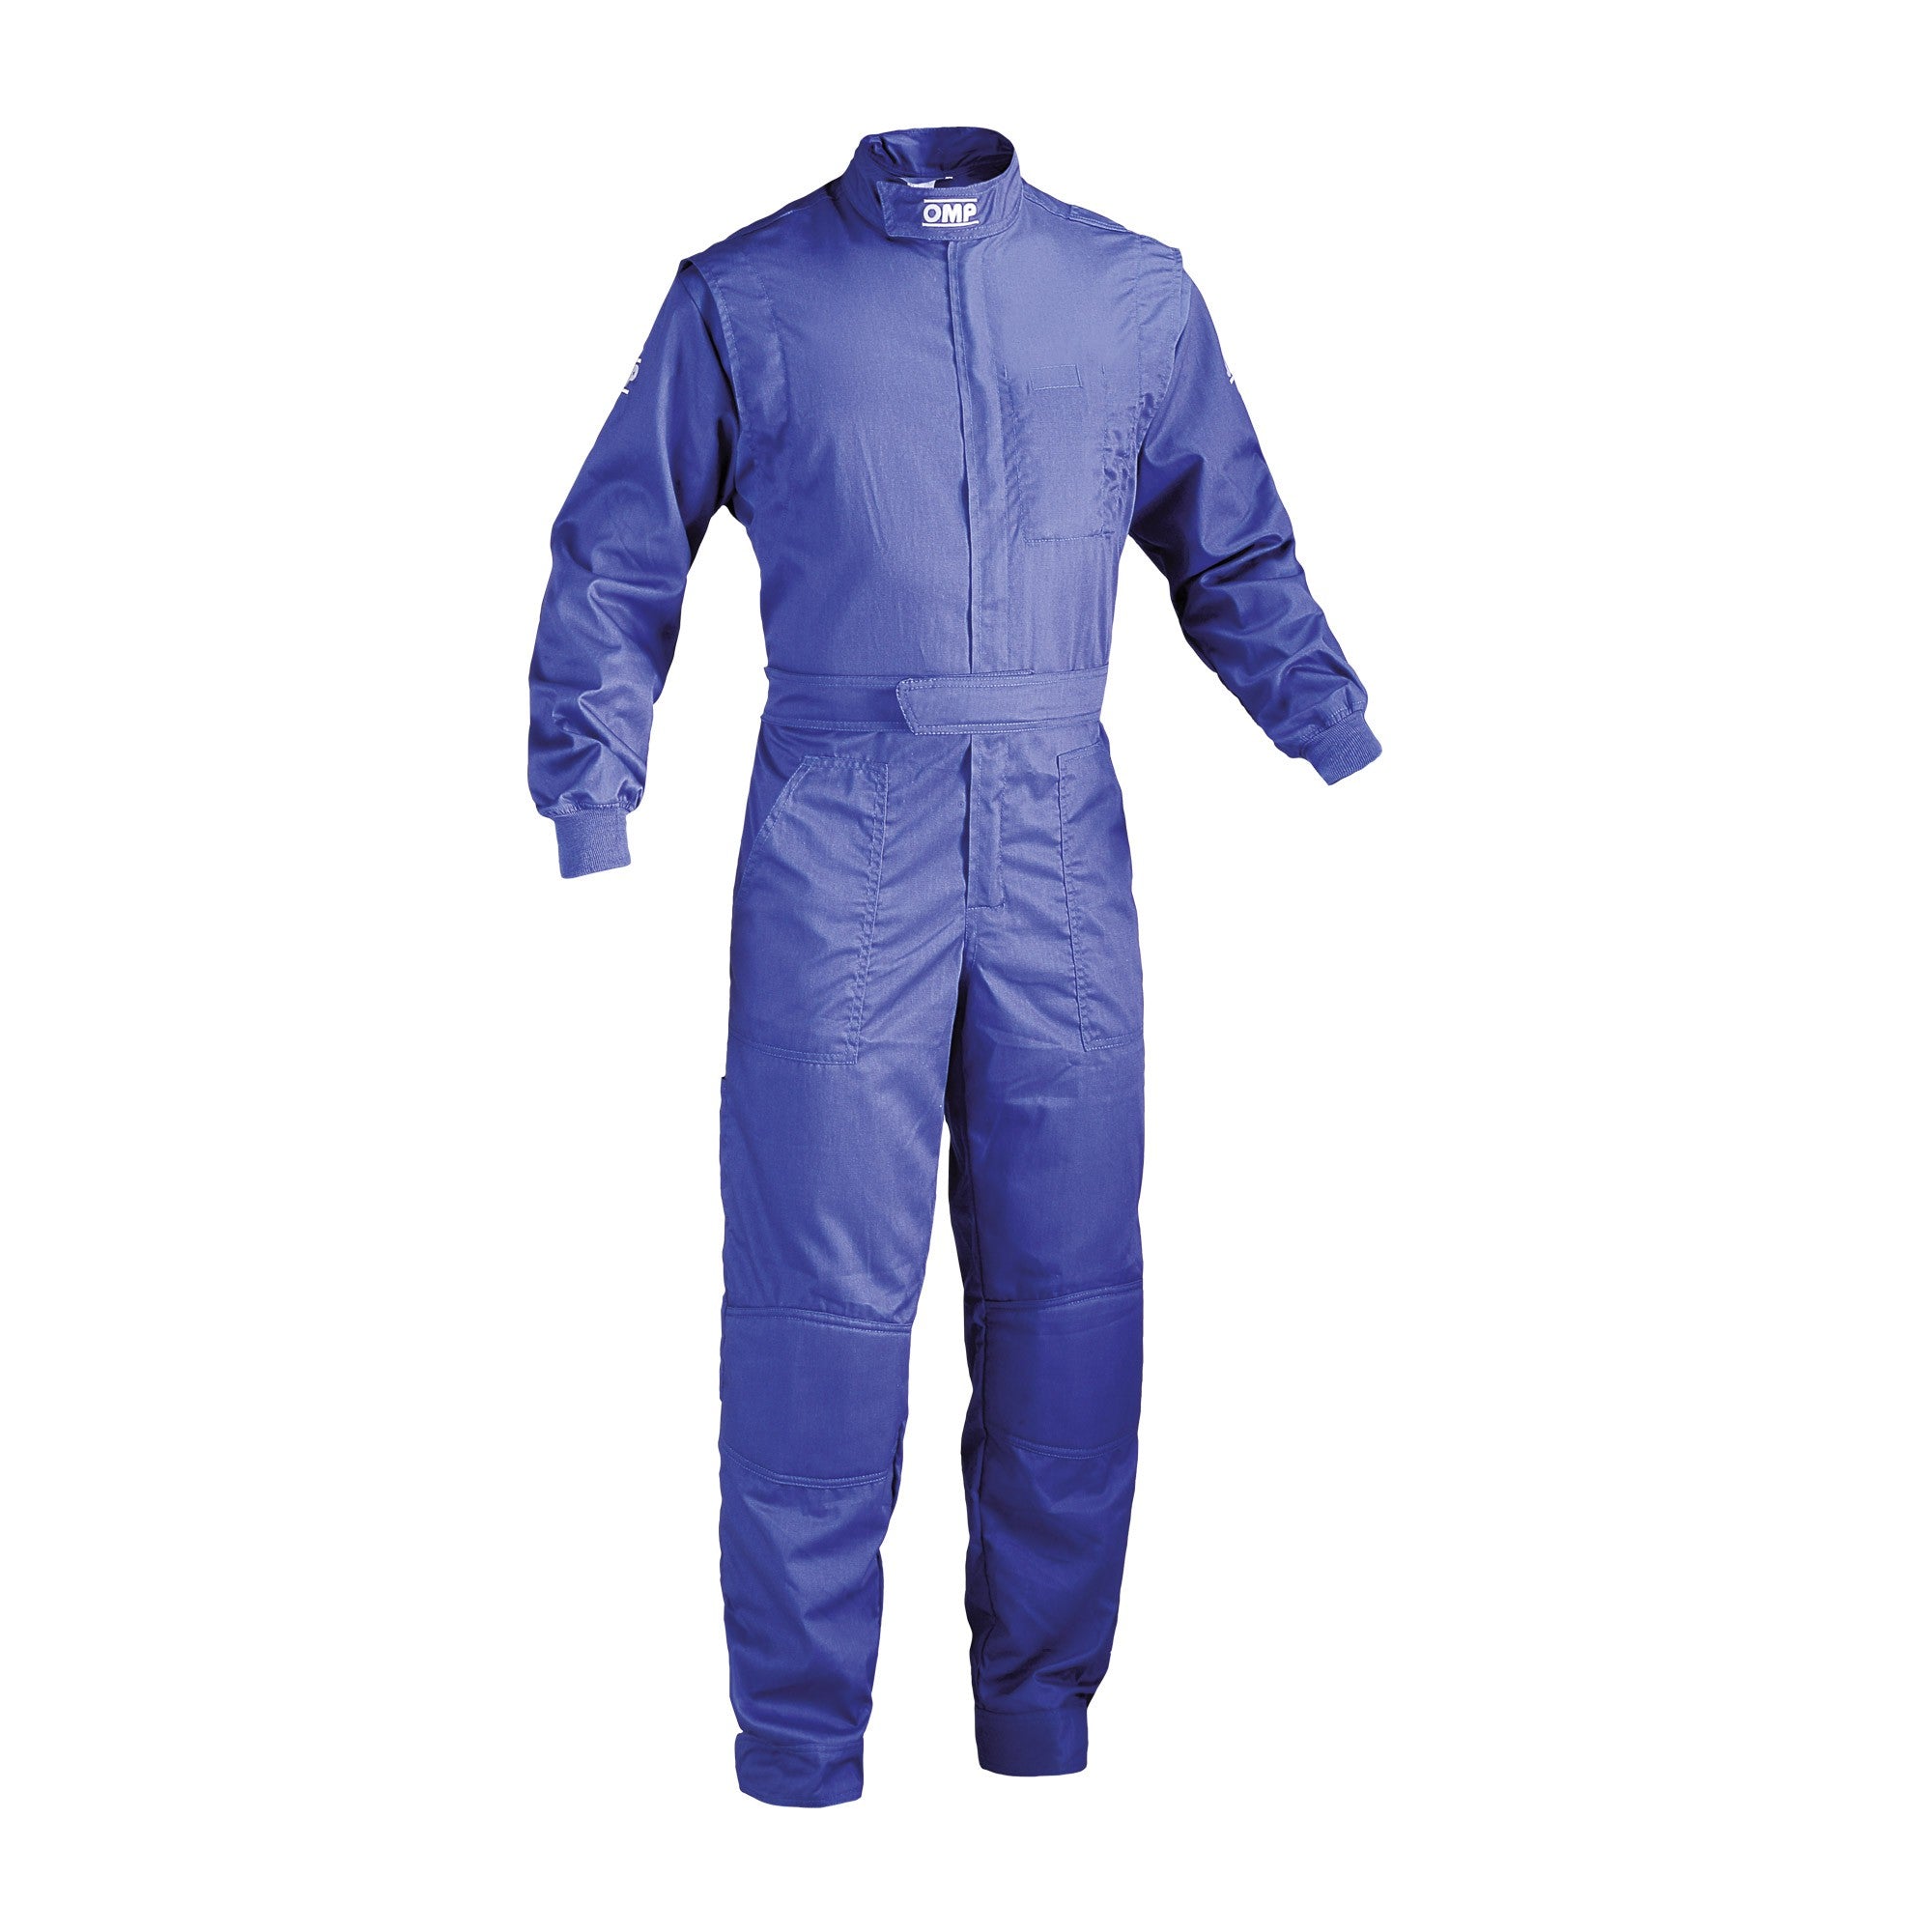 OMP NB0-1579-A01-041-54 (NB157904154) Mechanic suit SUMMER, blue, size 54 Photo-0 